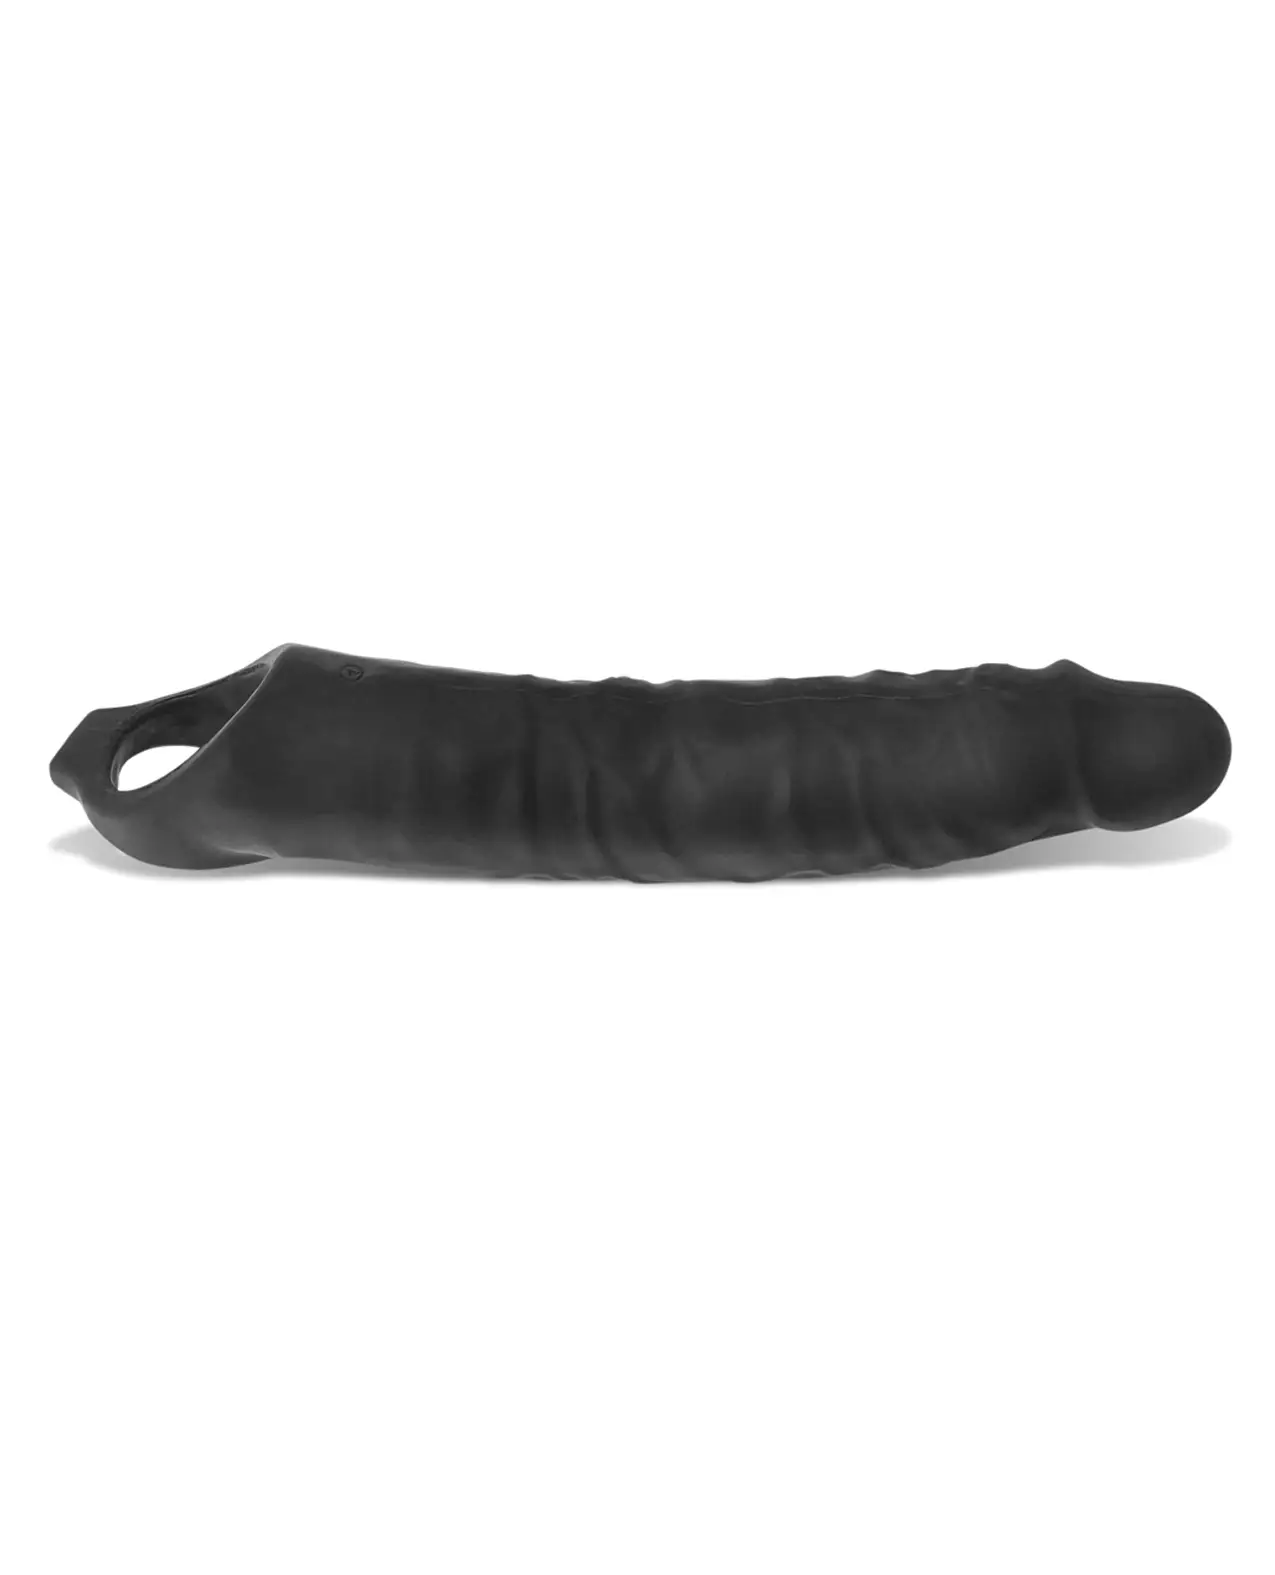 black textured penis sleeve